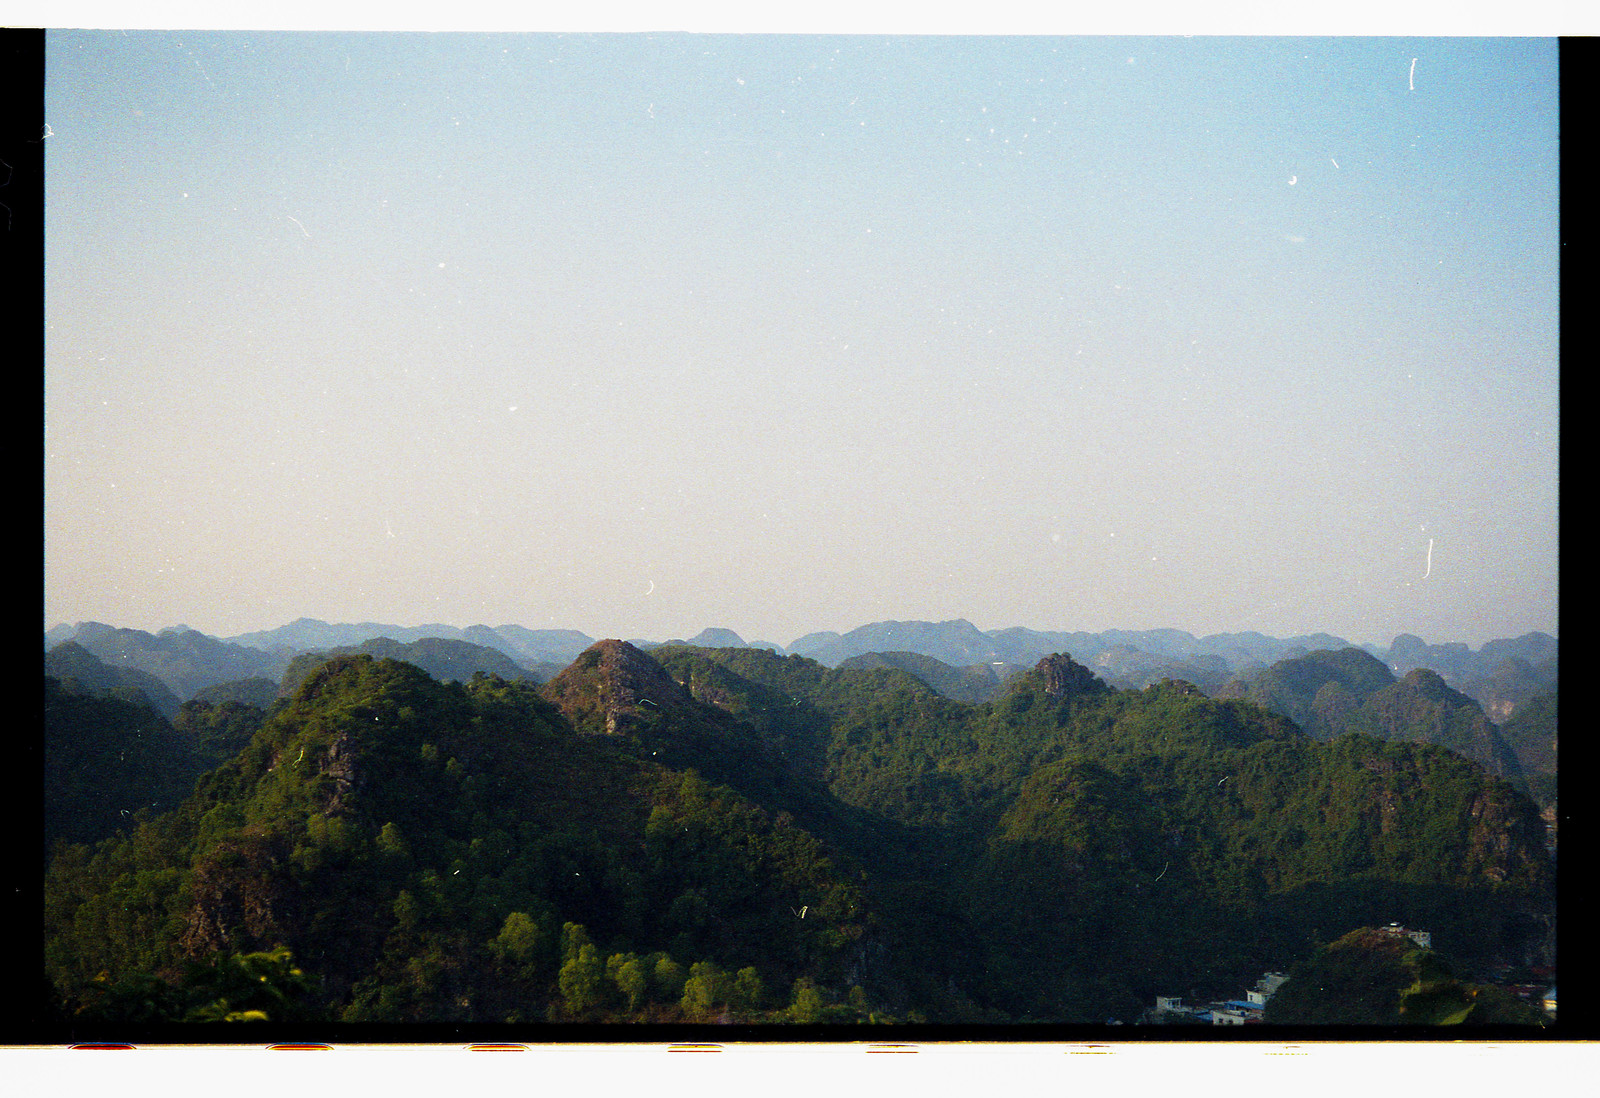 Wandering around Vietnam pt.[1/2] - My, Vietnam, Travels, Smoking, The photo, Longpost